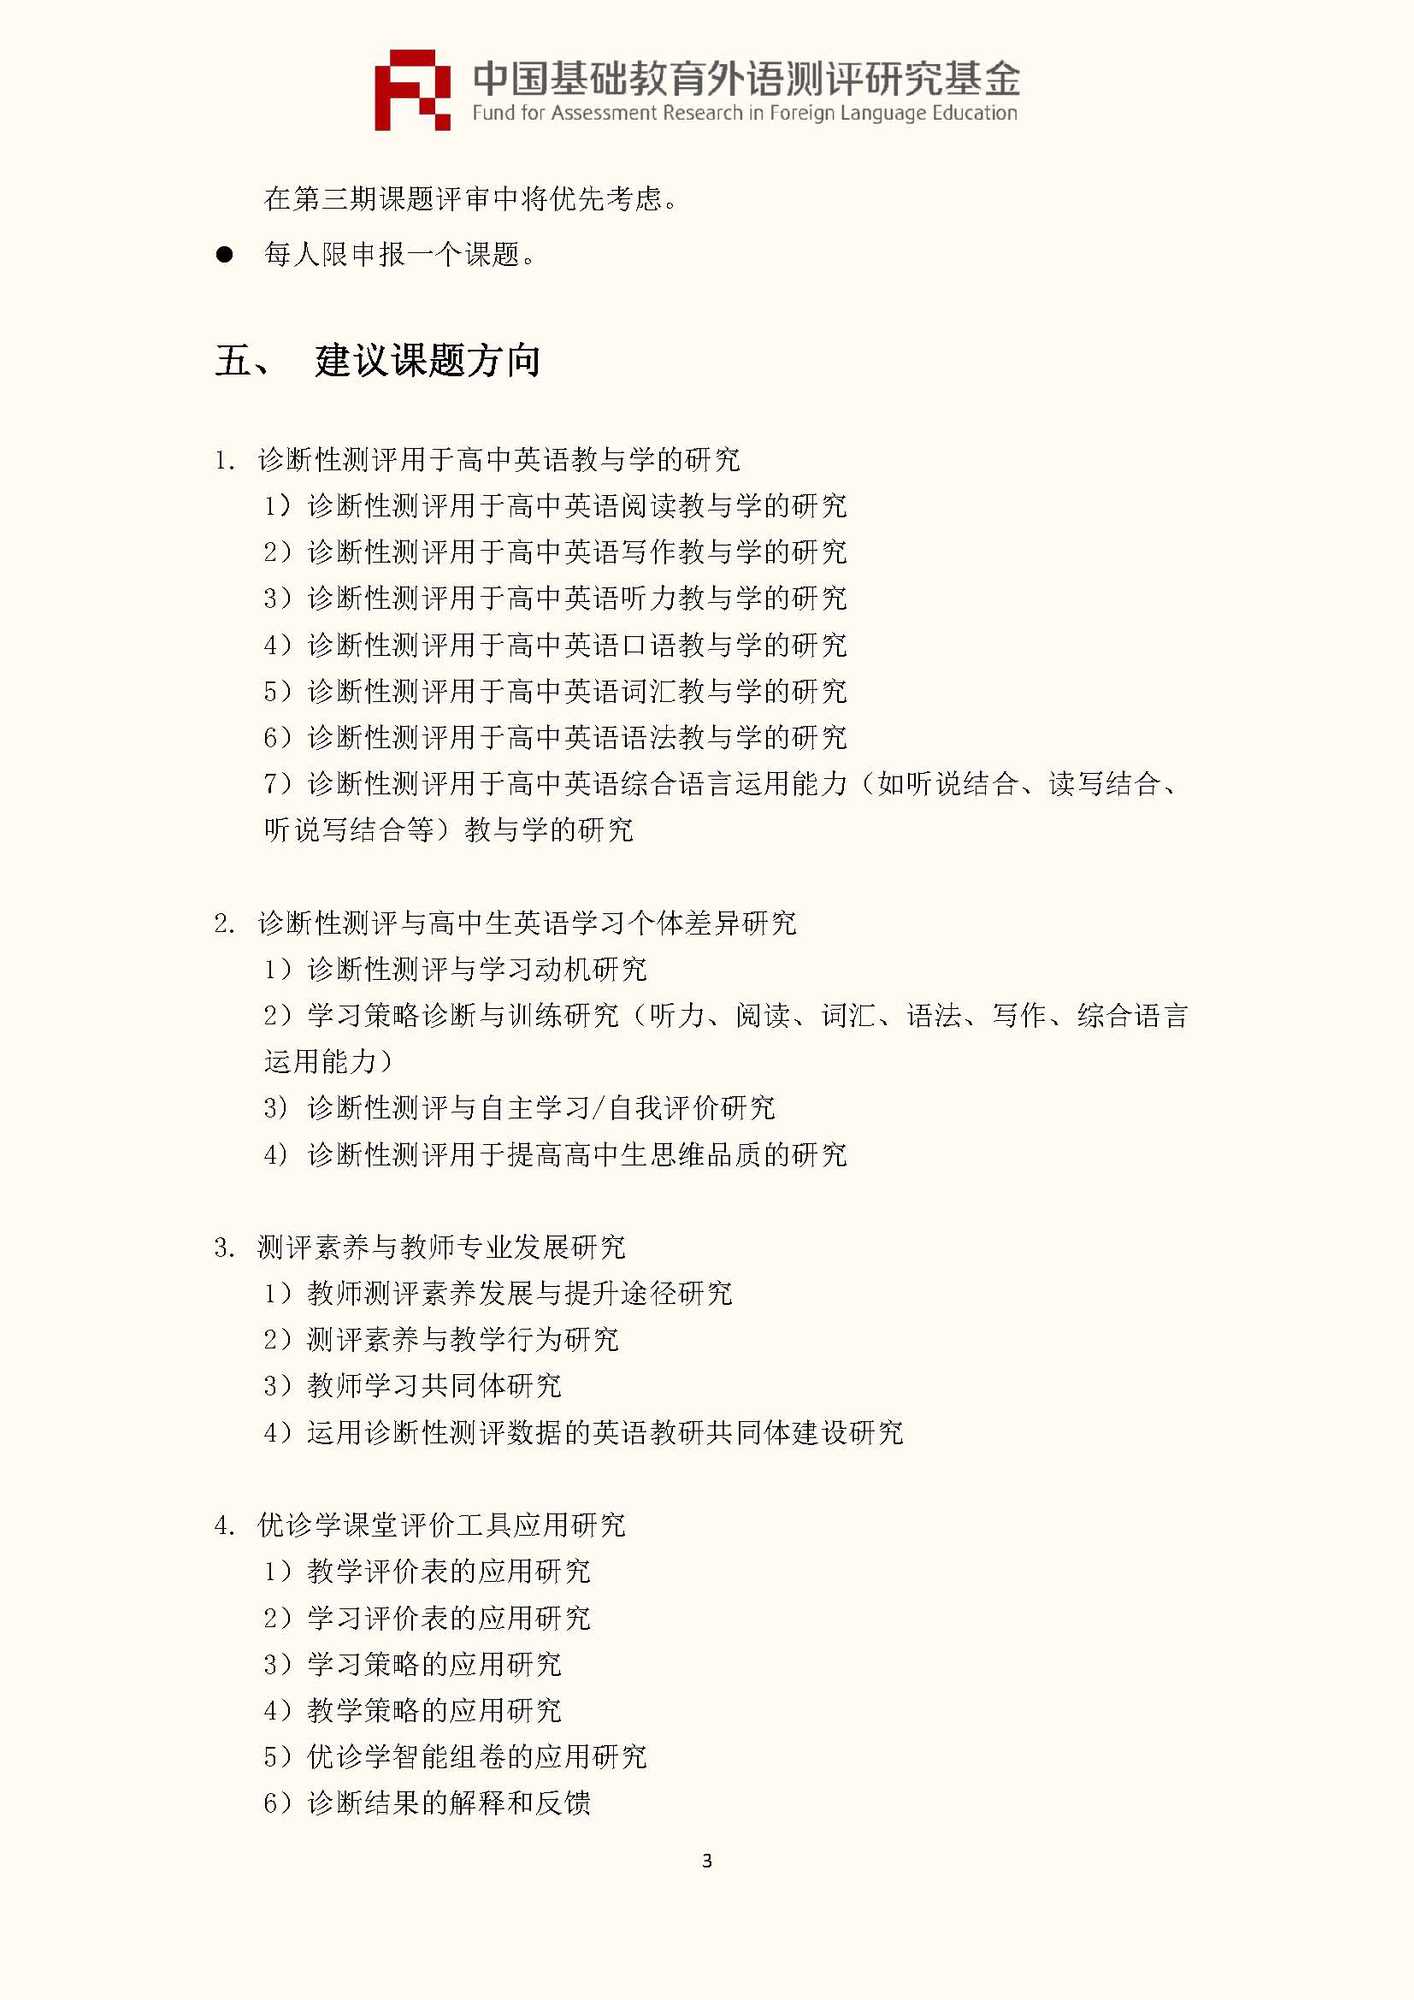 文件1：“中国基础教育外语测评研究基金”第三期课题申报指南_页面_05